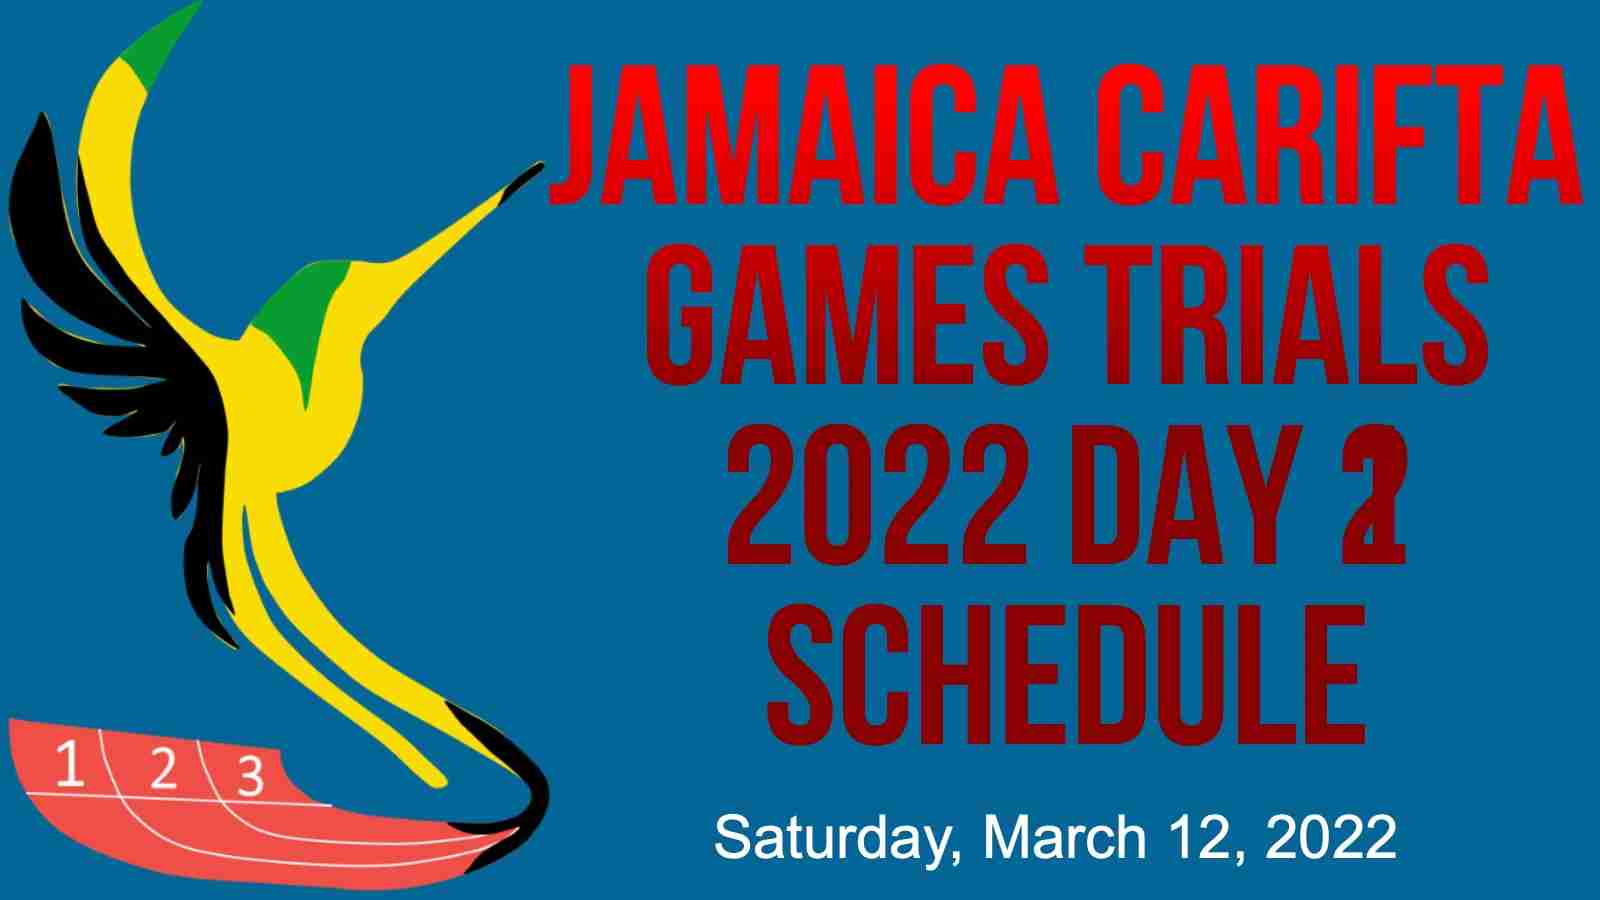 2022-Jamaica-Carifta-Games-Trials-Day-2